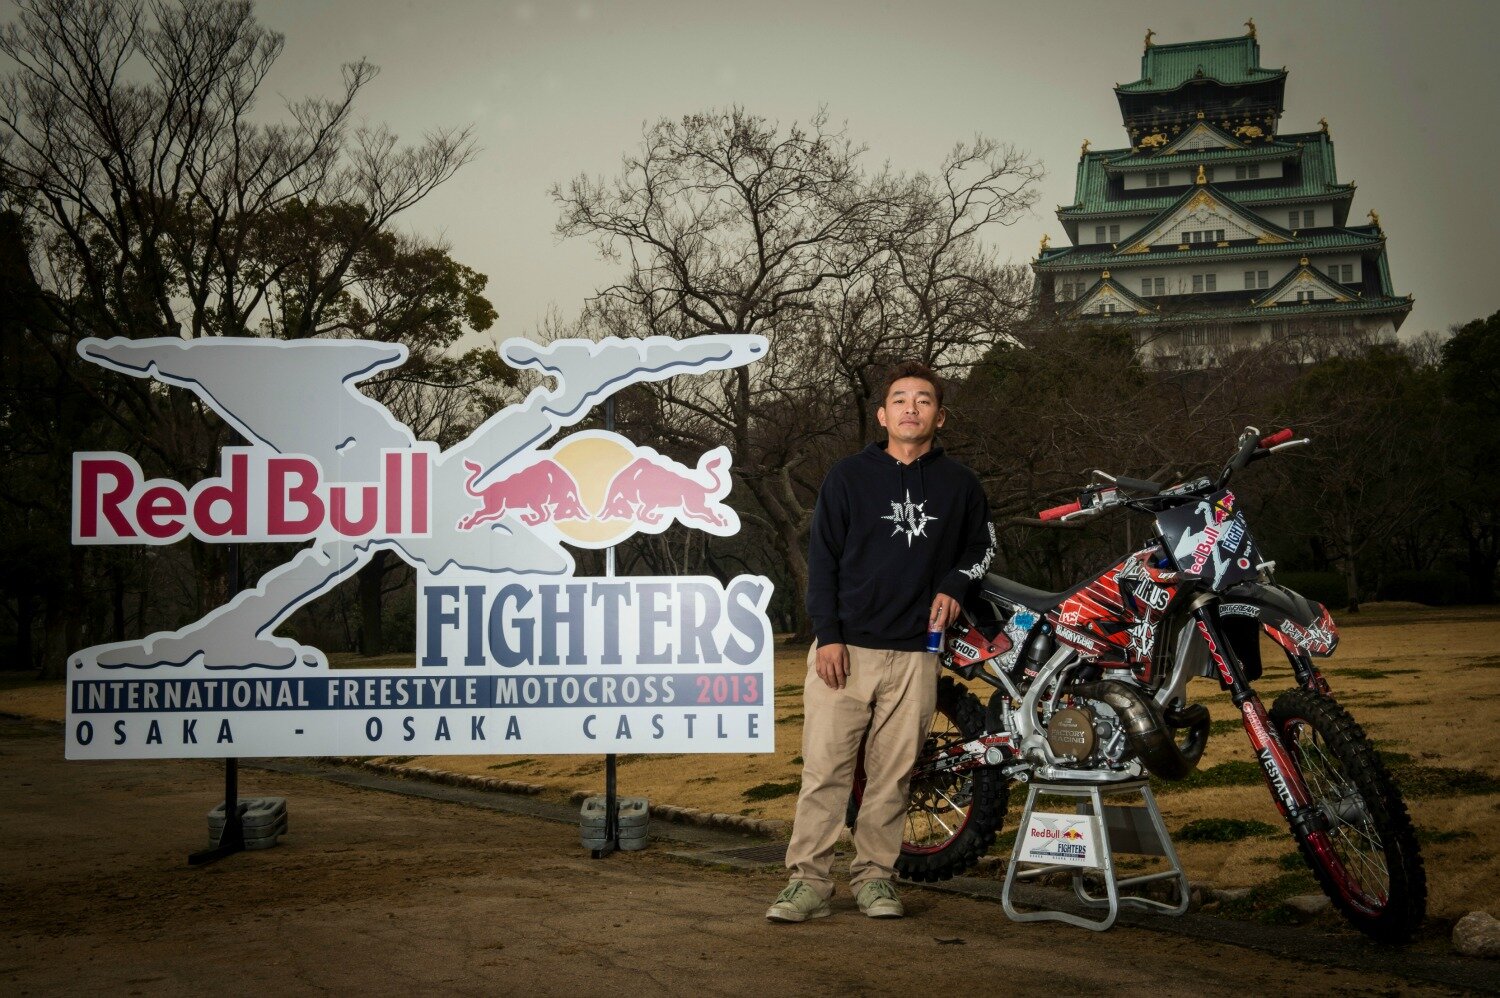 レッドブル ジャパン 再掲 本日正午から Red Bull X Fighters Osakaのチケットがオフィシャルサイトにて先行販売開始です 大阪城をバックにライダー達が舞う 必見です Http T Co Jqmpq5t8 Http T Co L3dsuiyn Rbxfjp Twitter